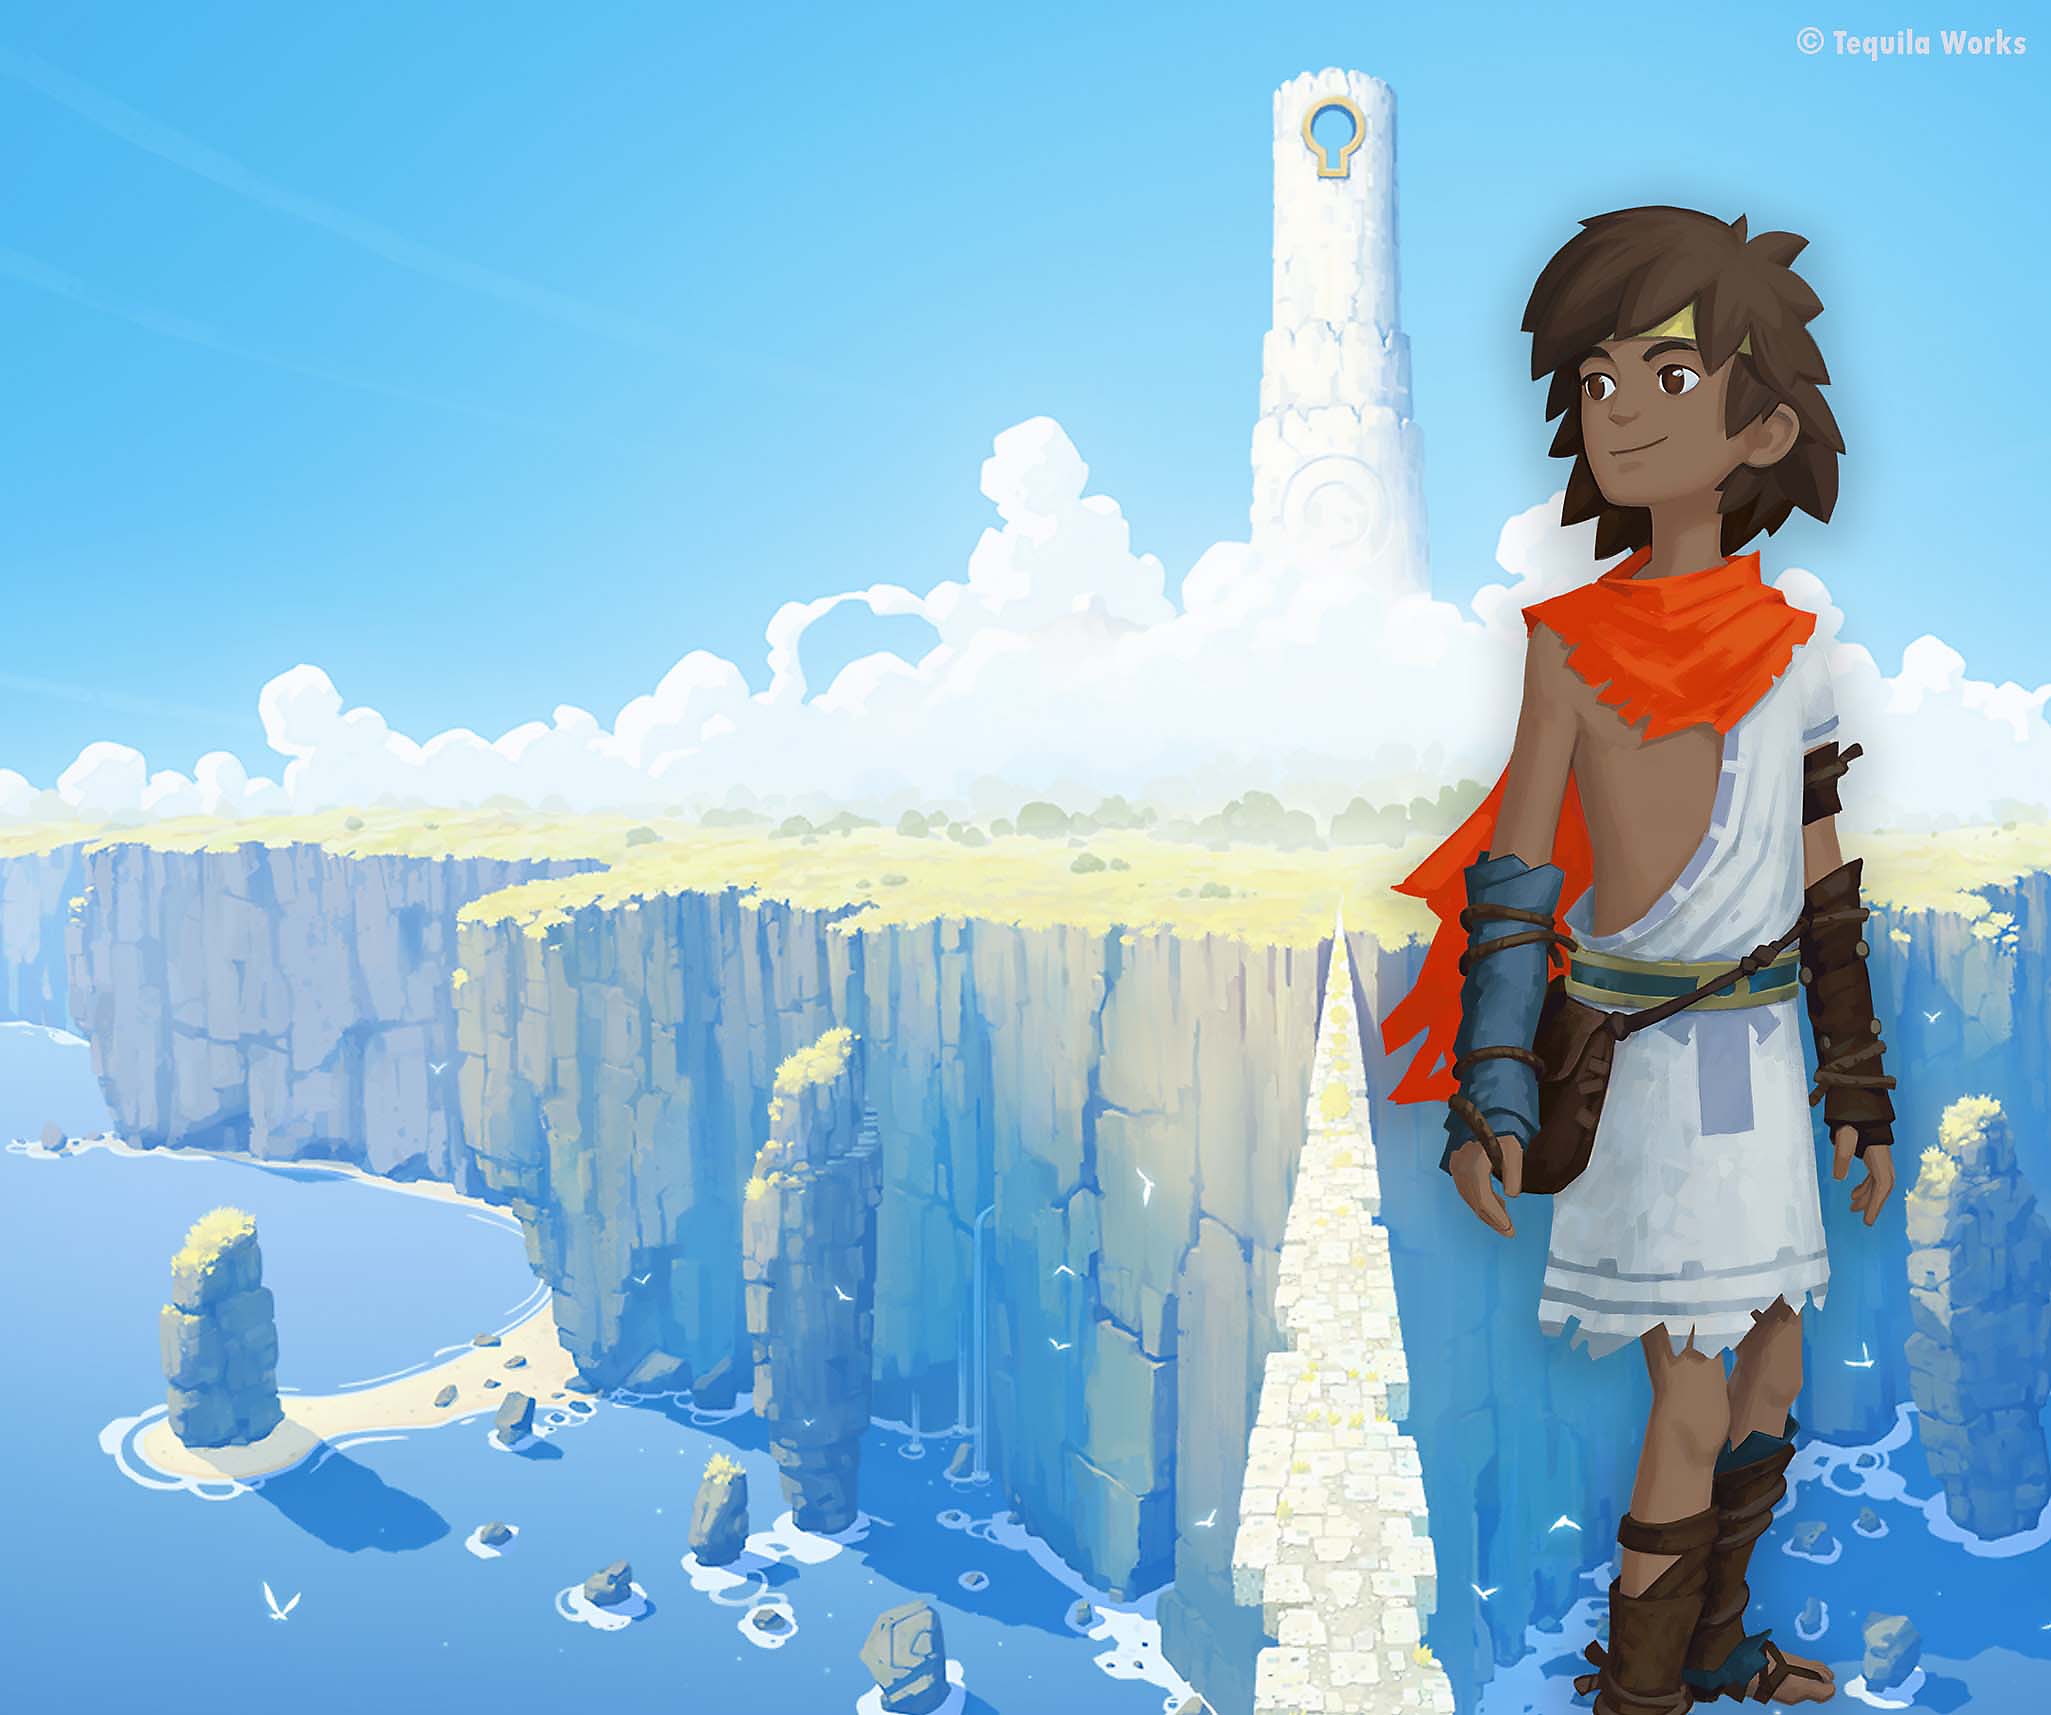 RiME - Arte principal mostrando o protagonista caminhando rumo a uma ilha imponente e coberta por nuvens